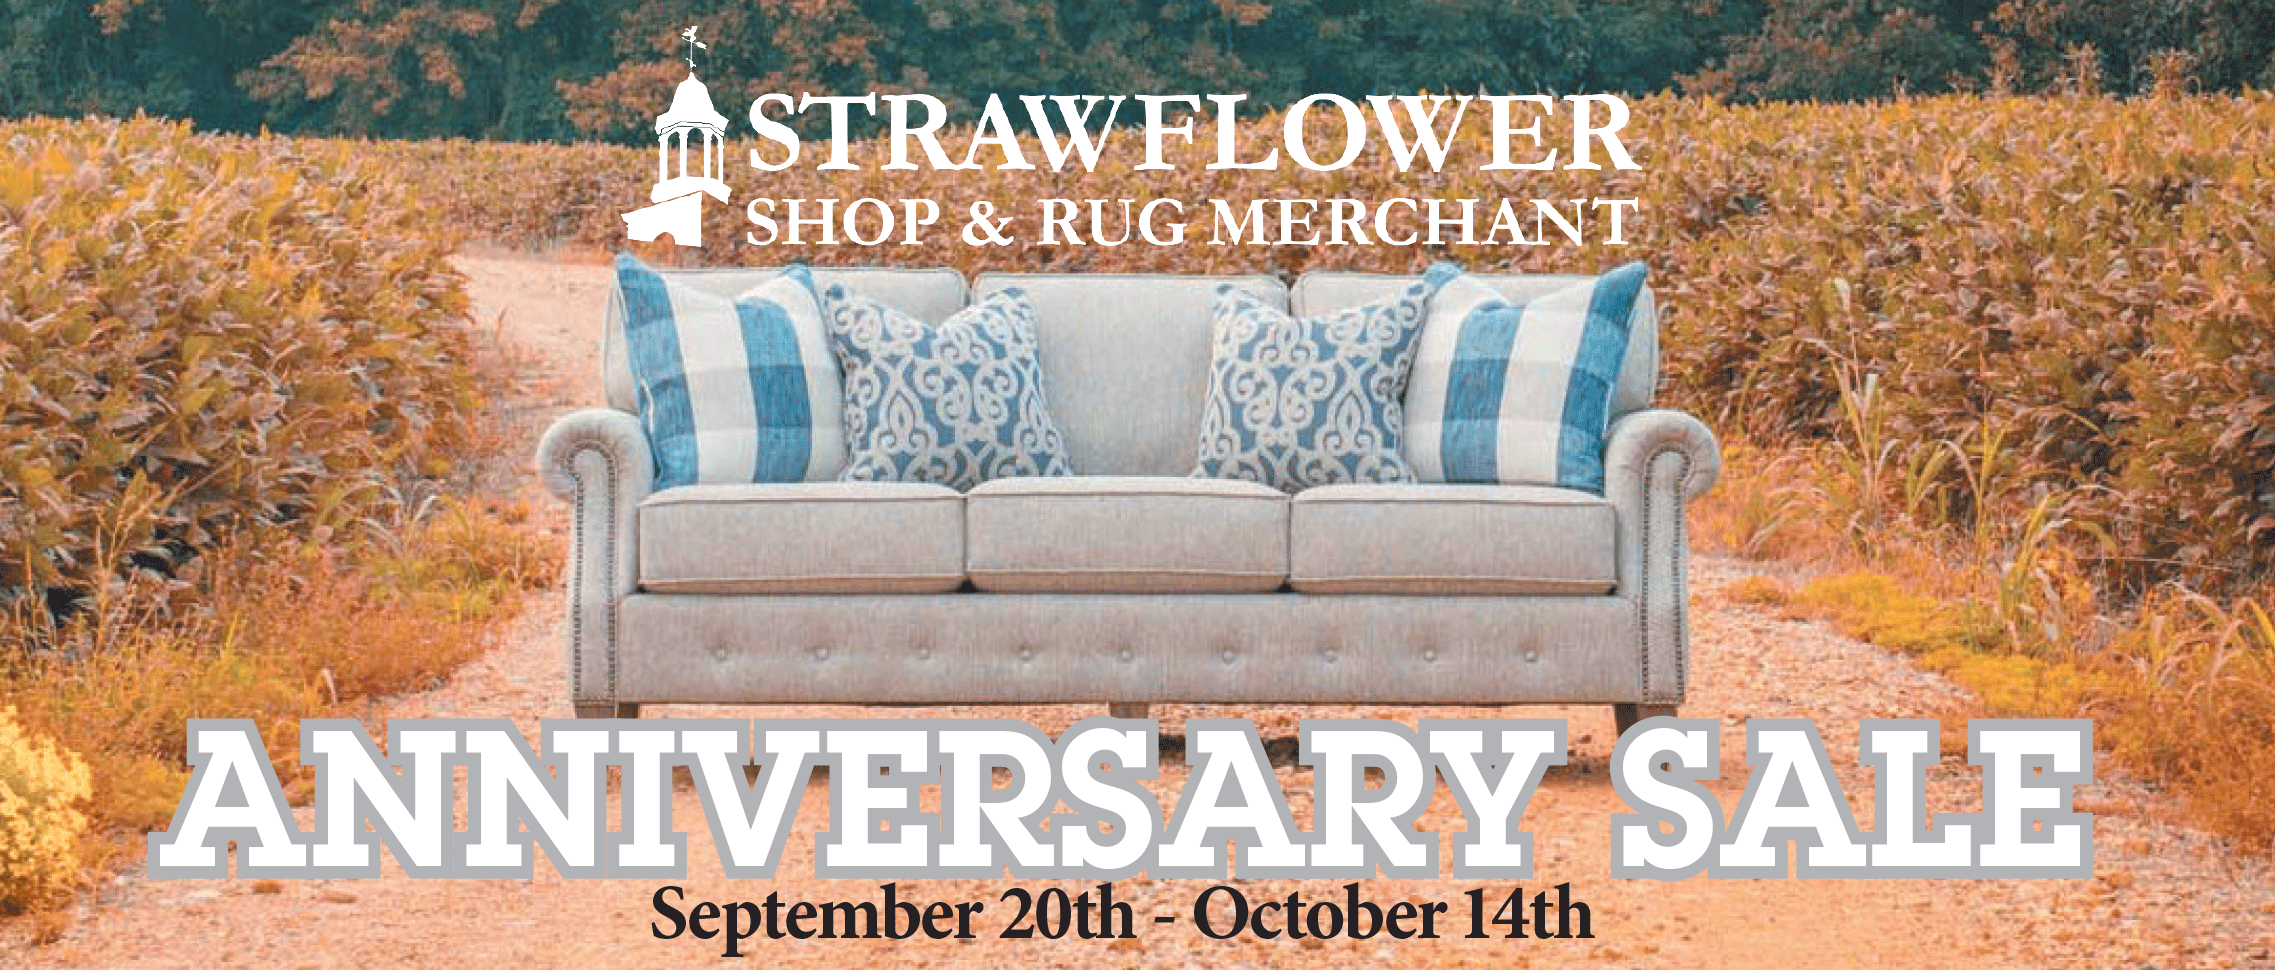 Strawflower Anniversary Sale